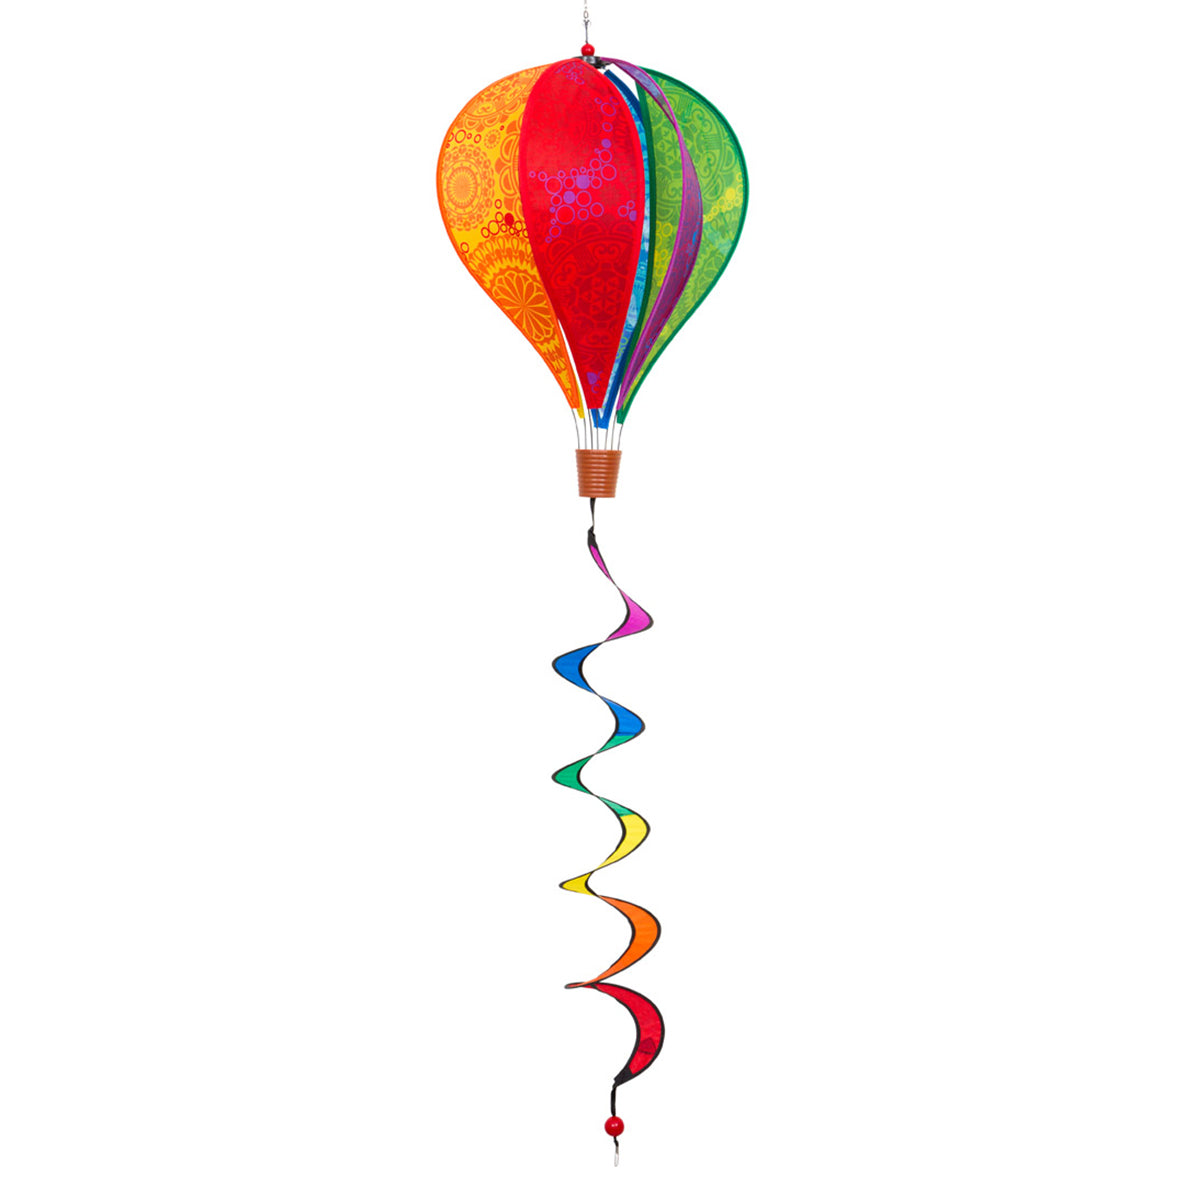 HQ Windspiel Heißluftballon HQ Hot Air Balloon Twist Victorian Style Windsack Garten Dekoration